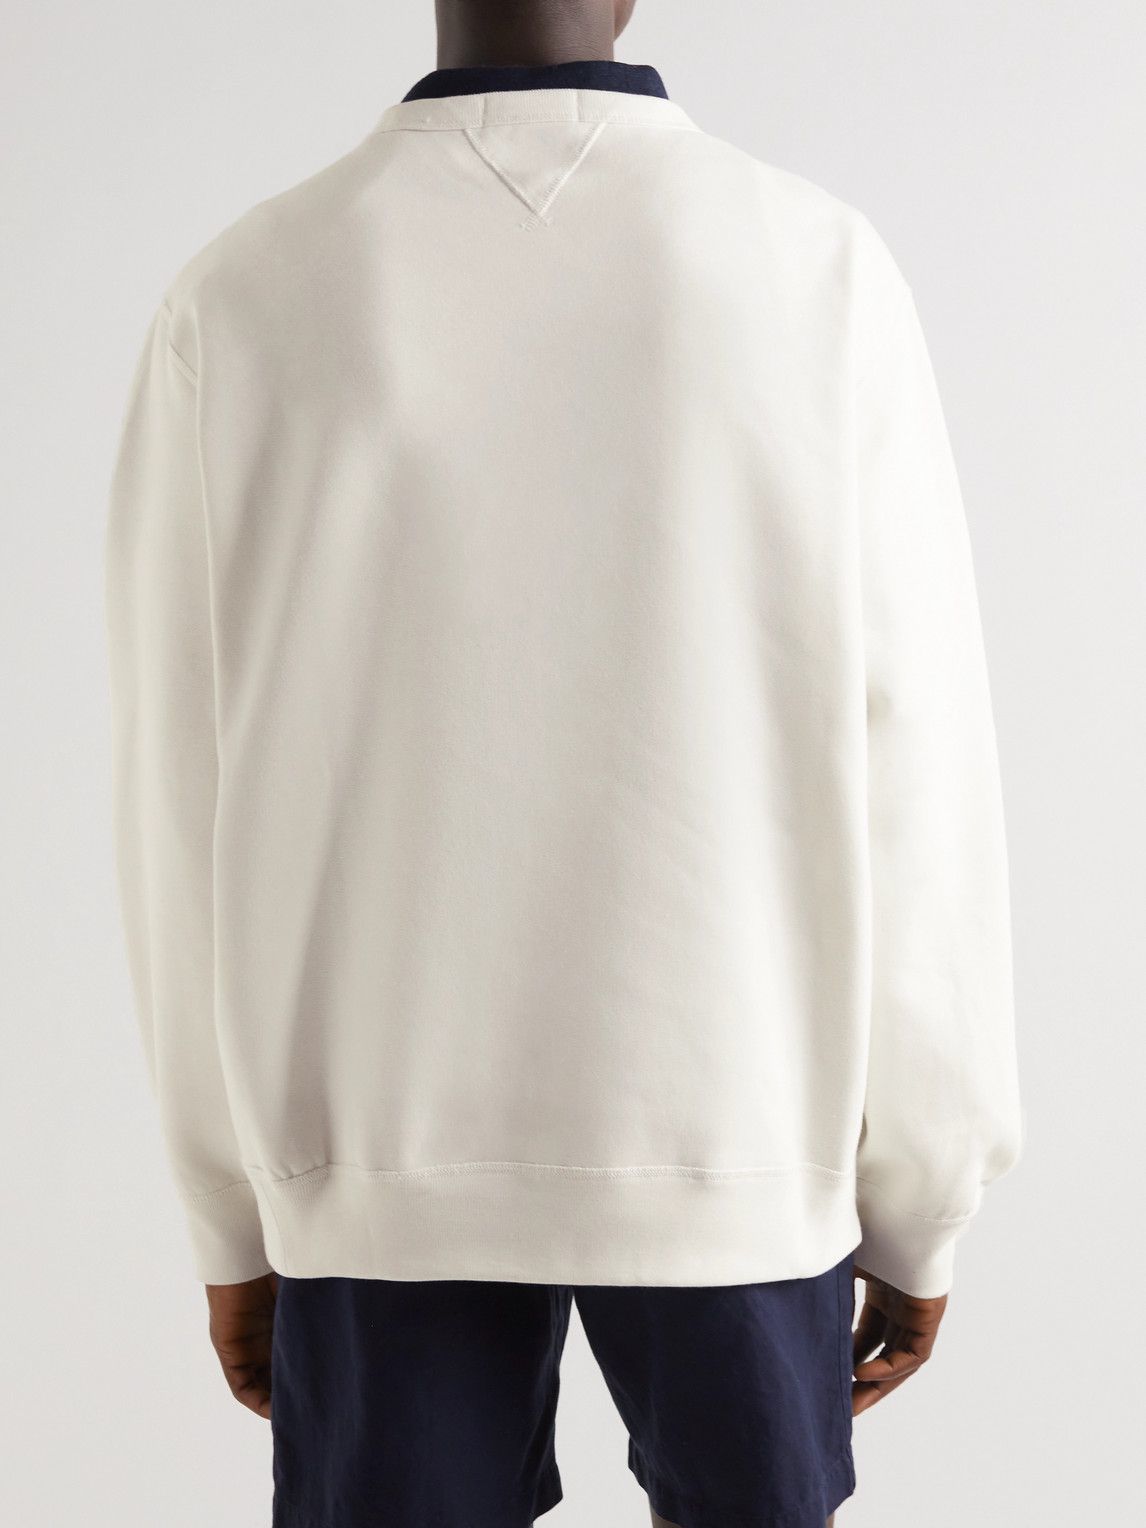 Polo Ralph Lauren - Chariots of Fire Cotton-Blend Jersey Sweatshirt - Neutrals